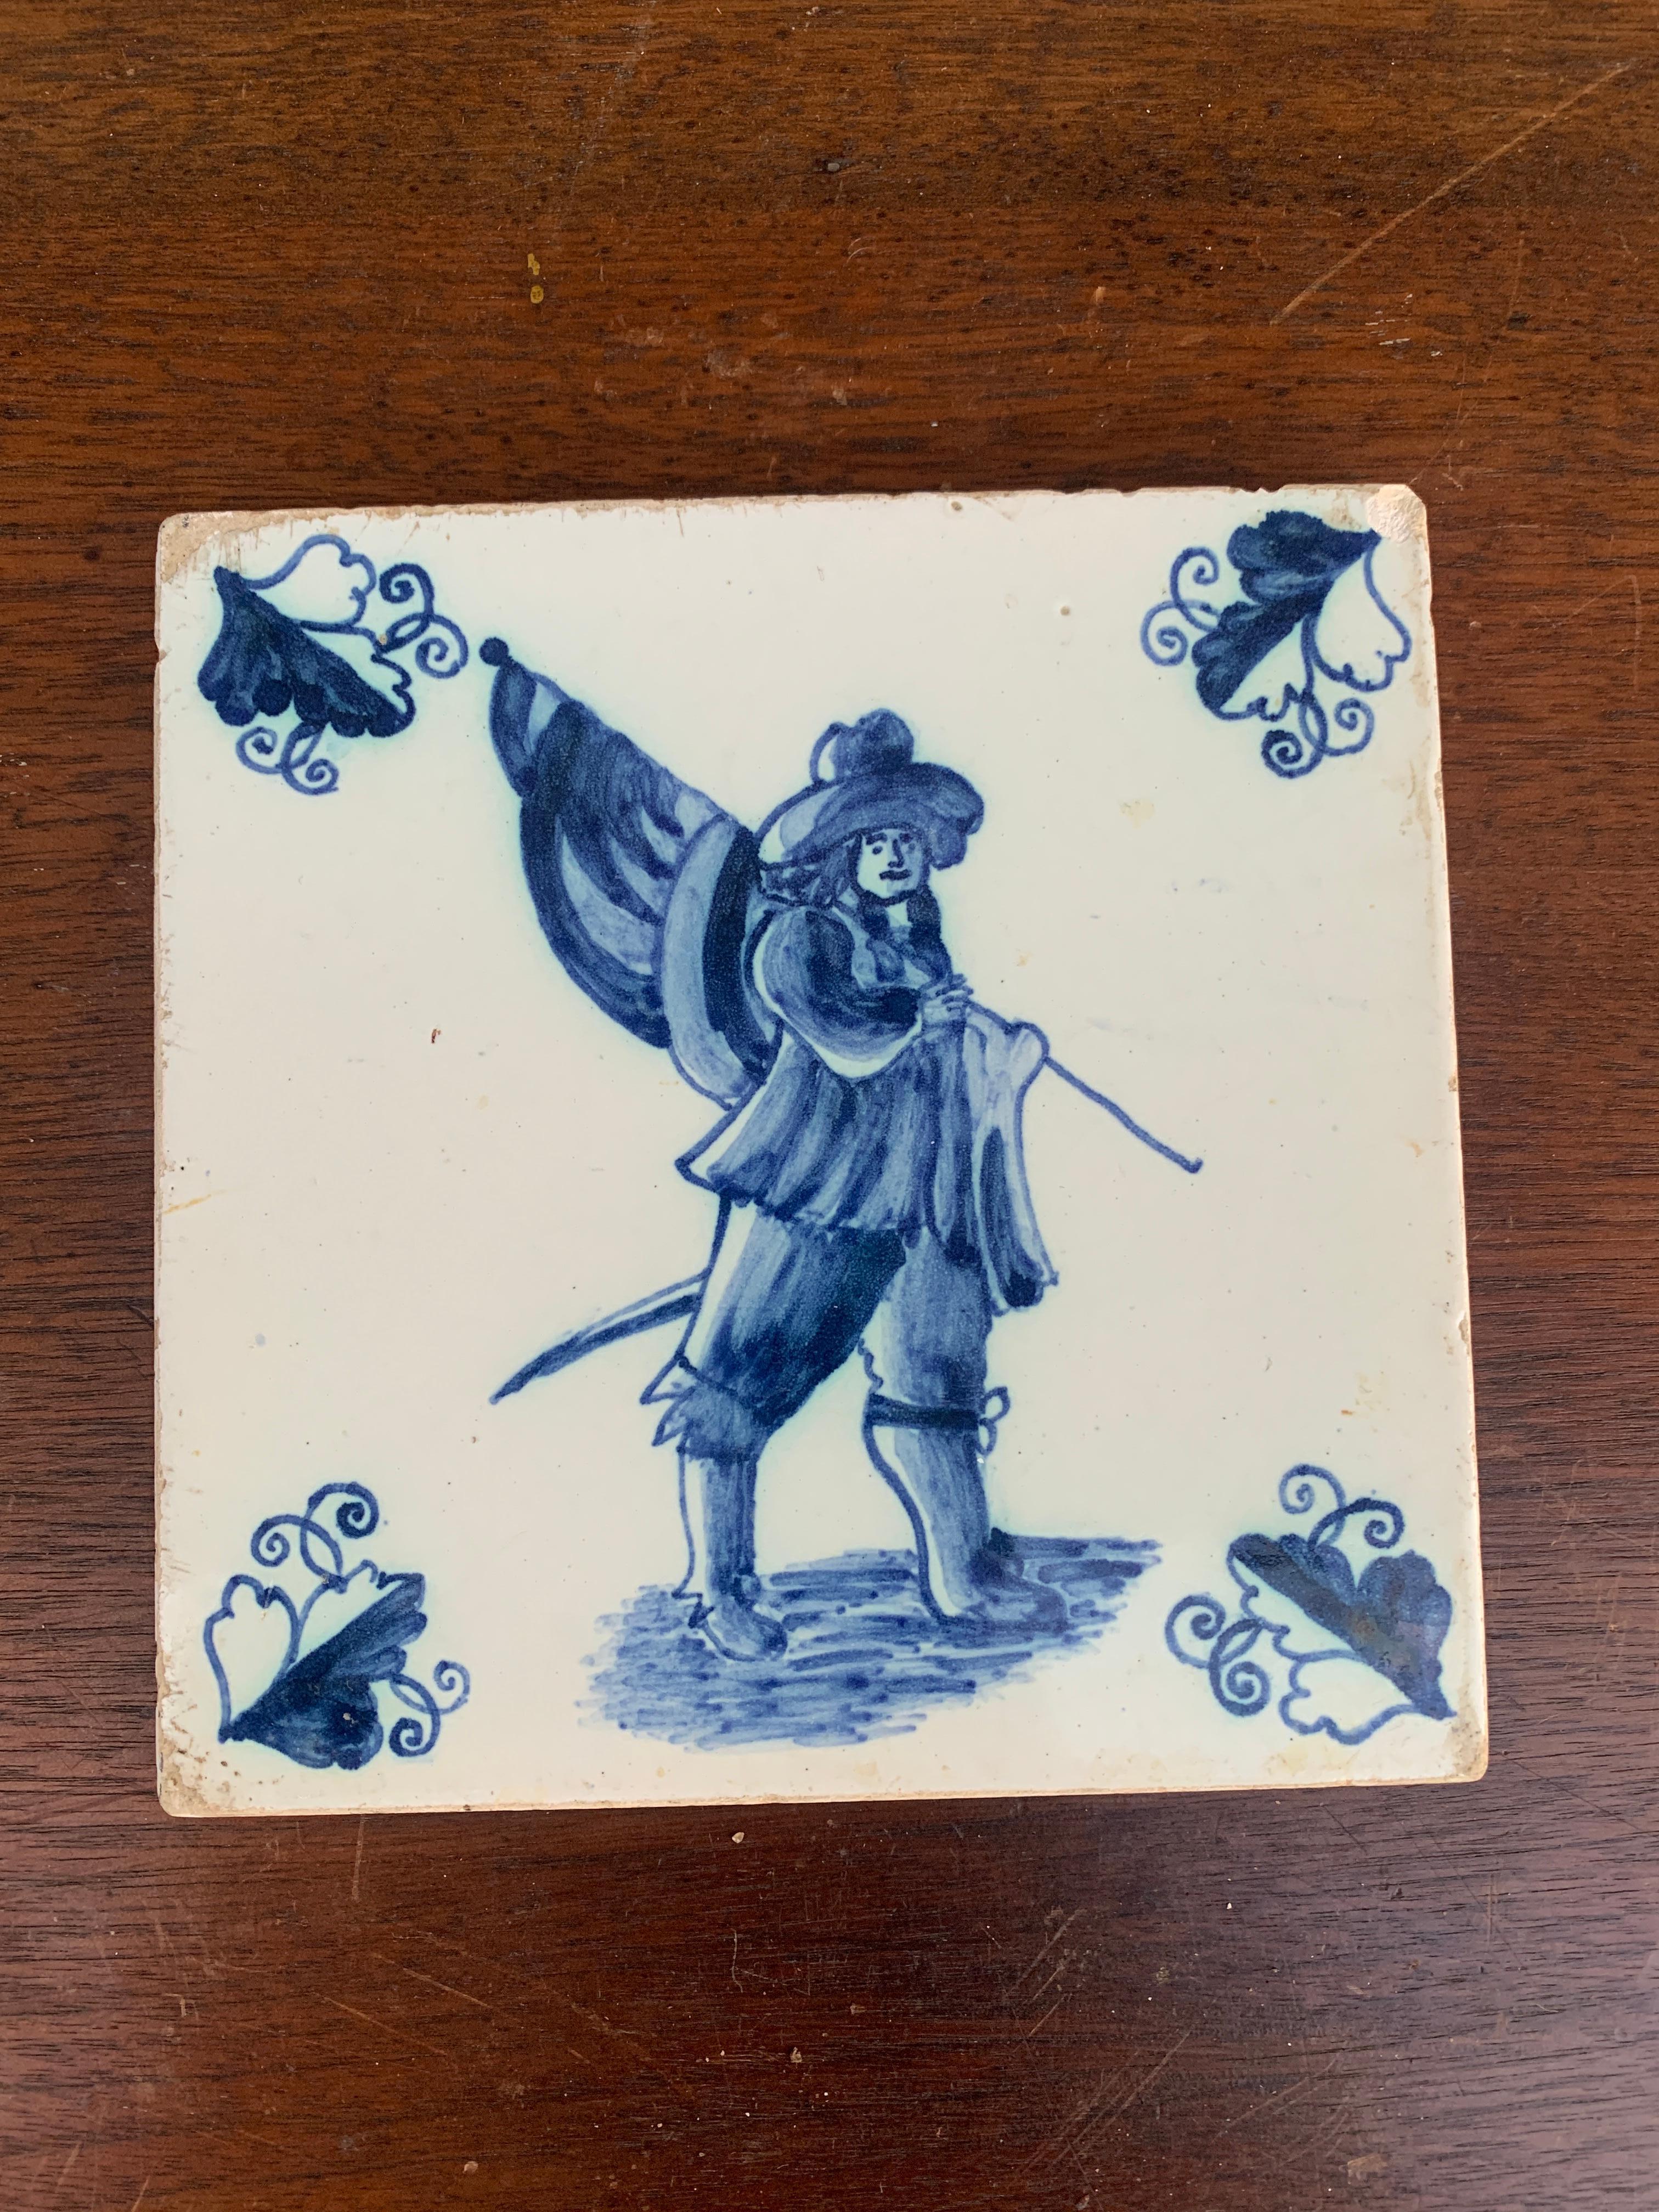 Eine schöne antike, handbemalte Keramikfliese in blau-weißem Delft- oder französischem Provinzialstil mit einem Soldaten, der eine Flagge trägt. Das wäre ein hervorragender Untersetzer.

Holland, ca. Mitte des 19. Jahrhunderts

Maße: 5,25 